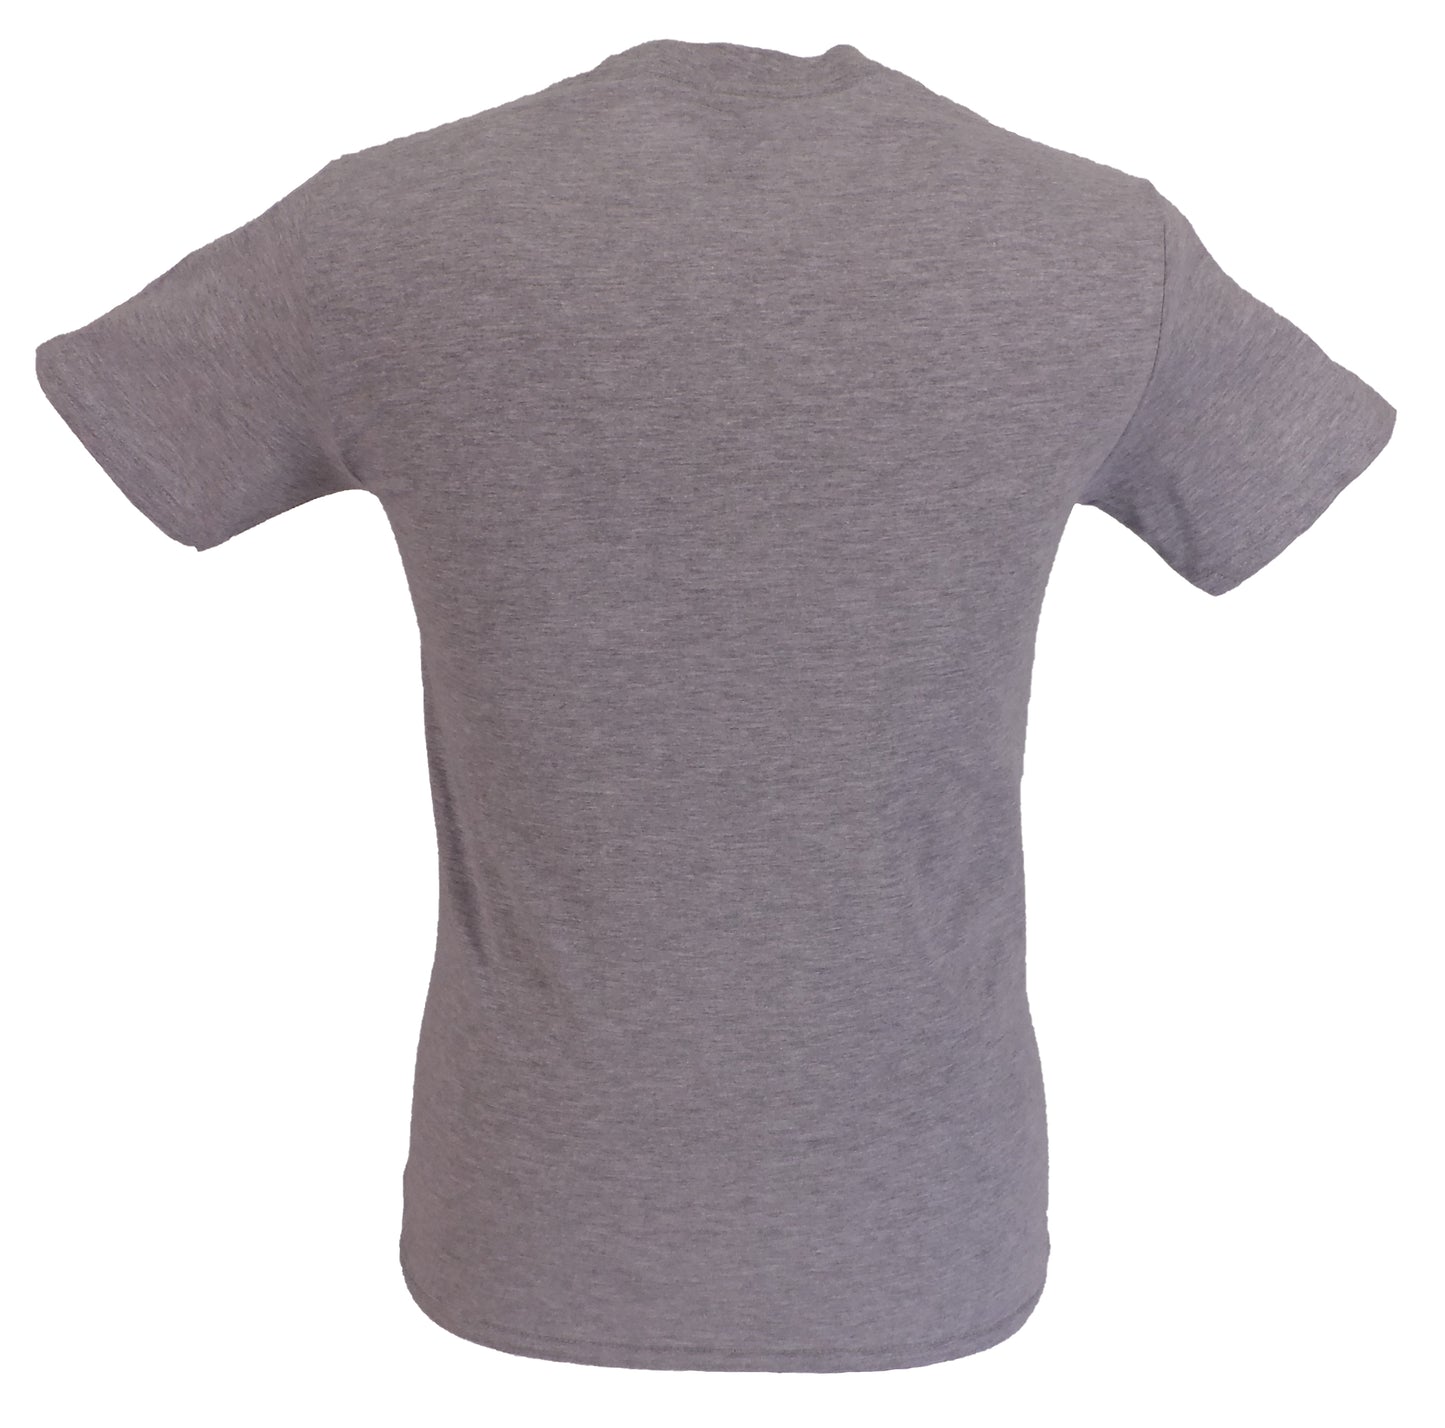 T-shirt ufficiale The Jam da uomo con logo grigio invecchiato